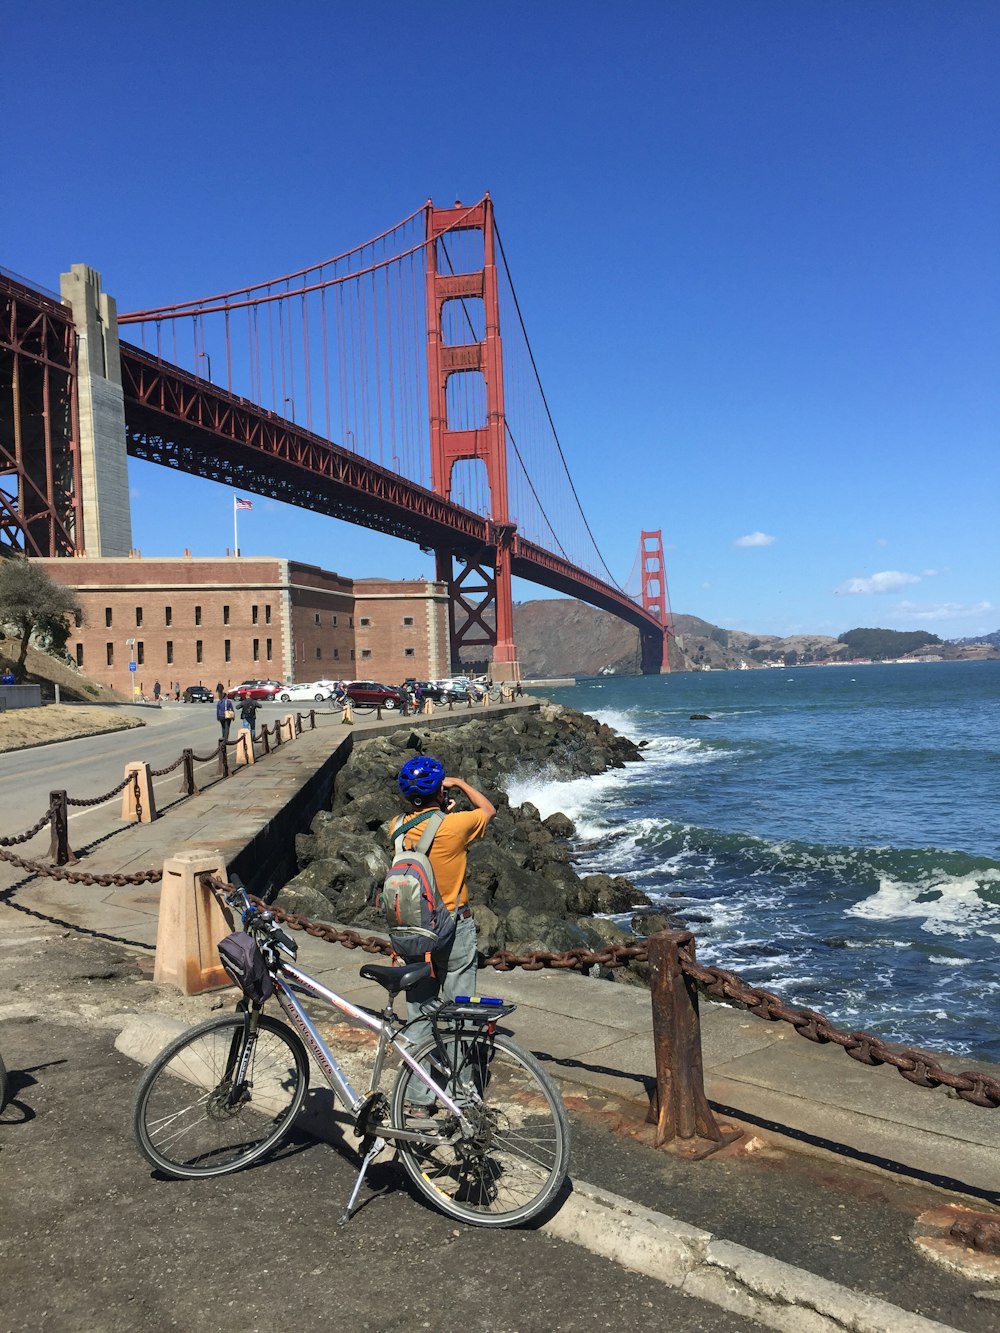 hombre con camisa amarilla montando en bicicleta en el puente durante el día